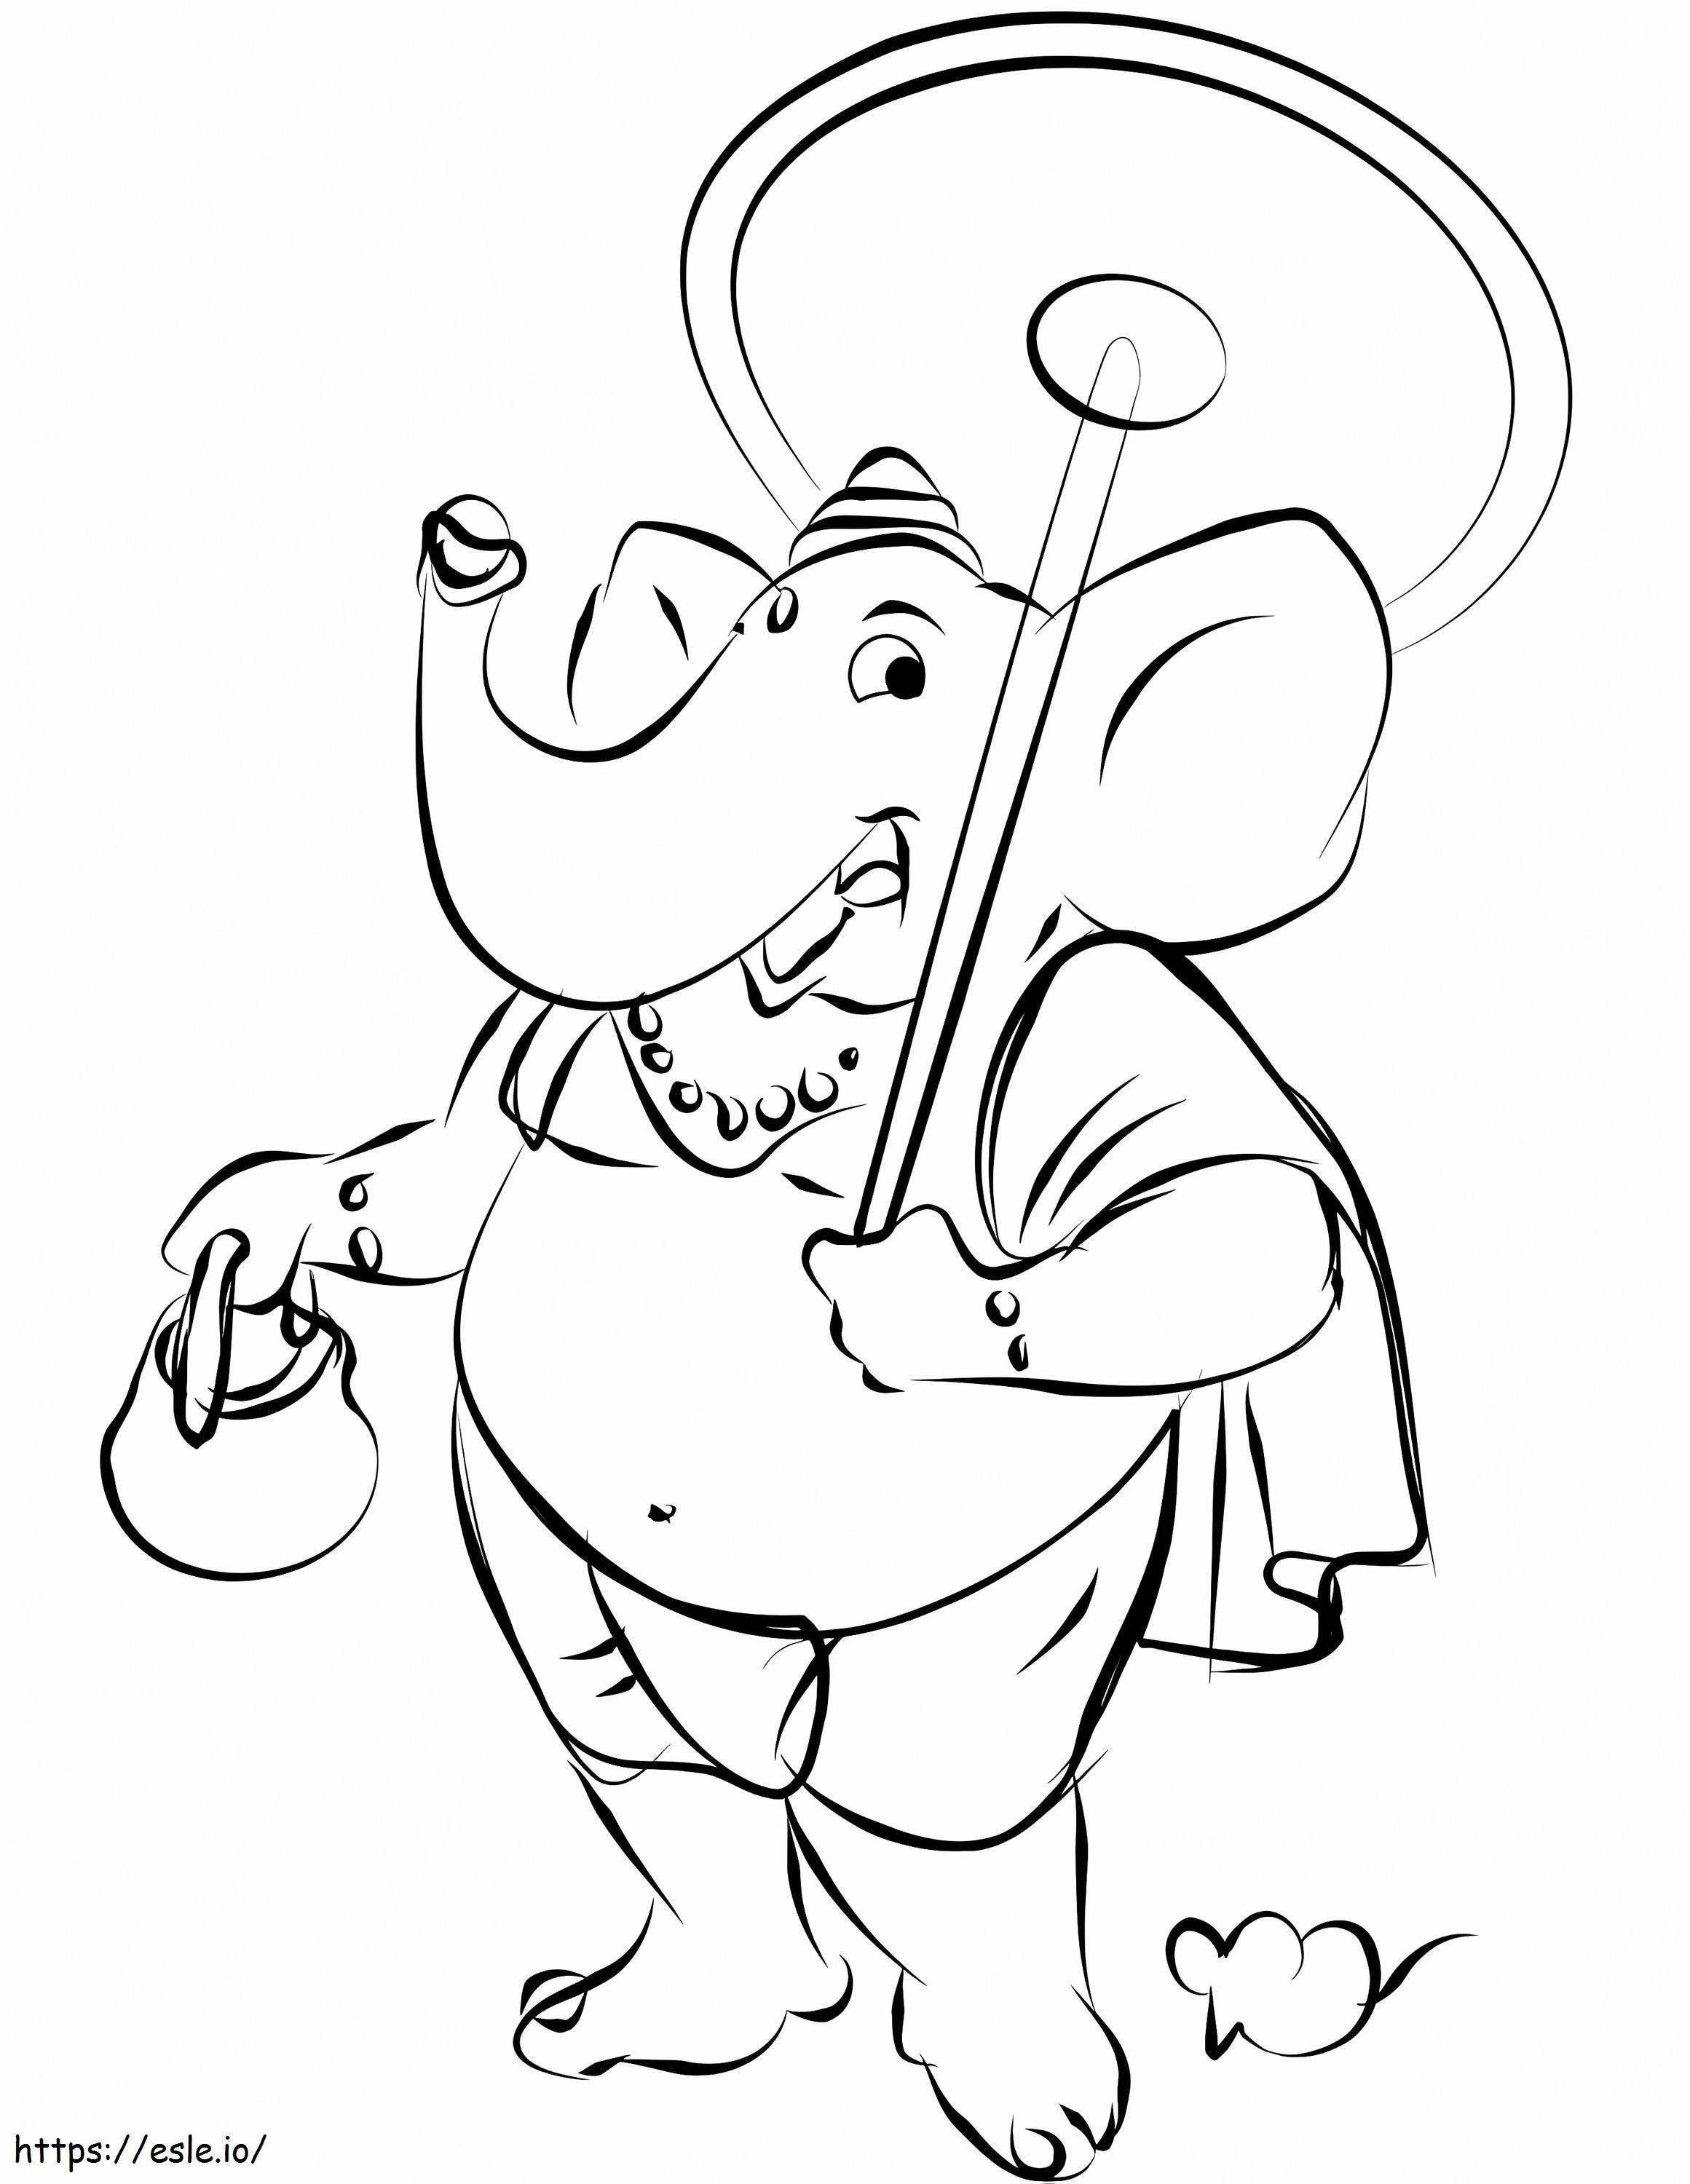 Ganesha dos desenhos animados para colorir